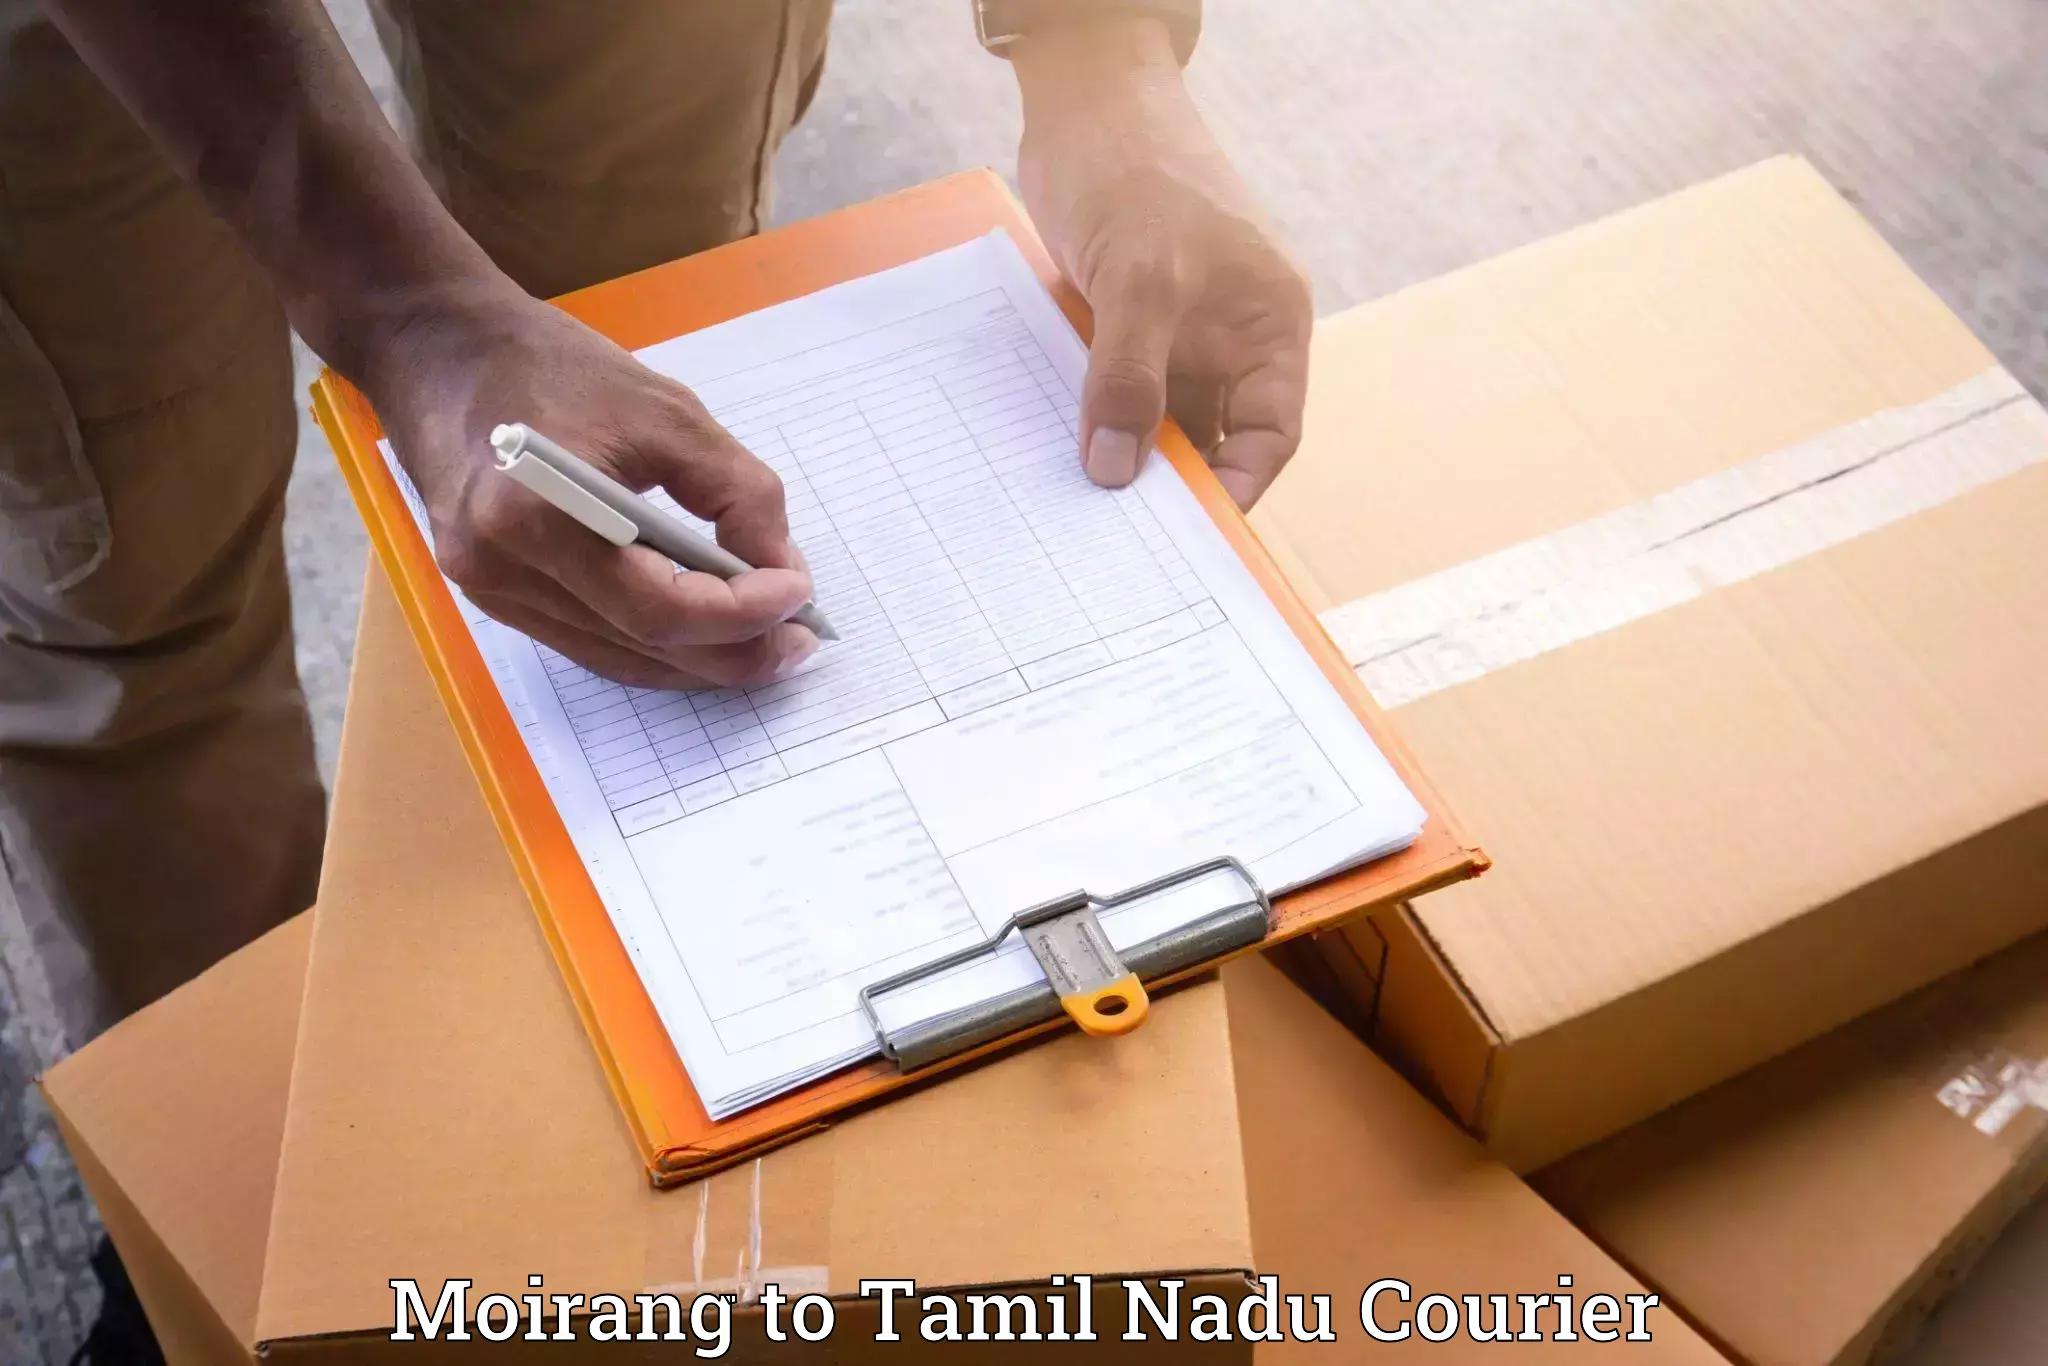 Stress-free household shifting Moirang to Tamil Nadu